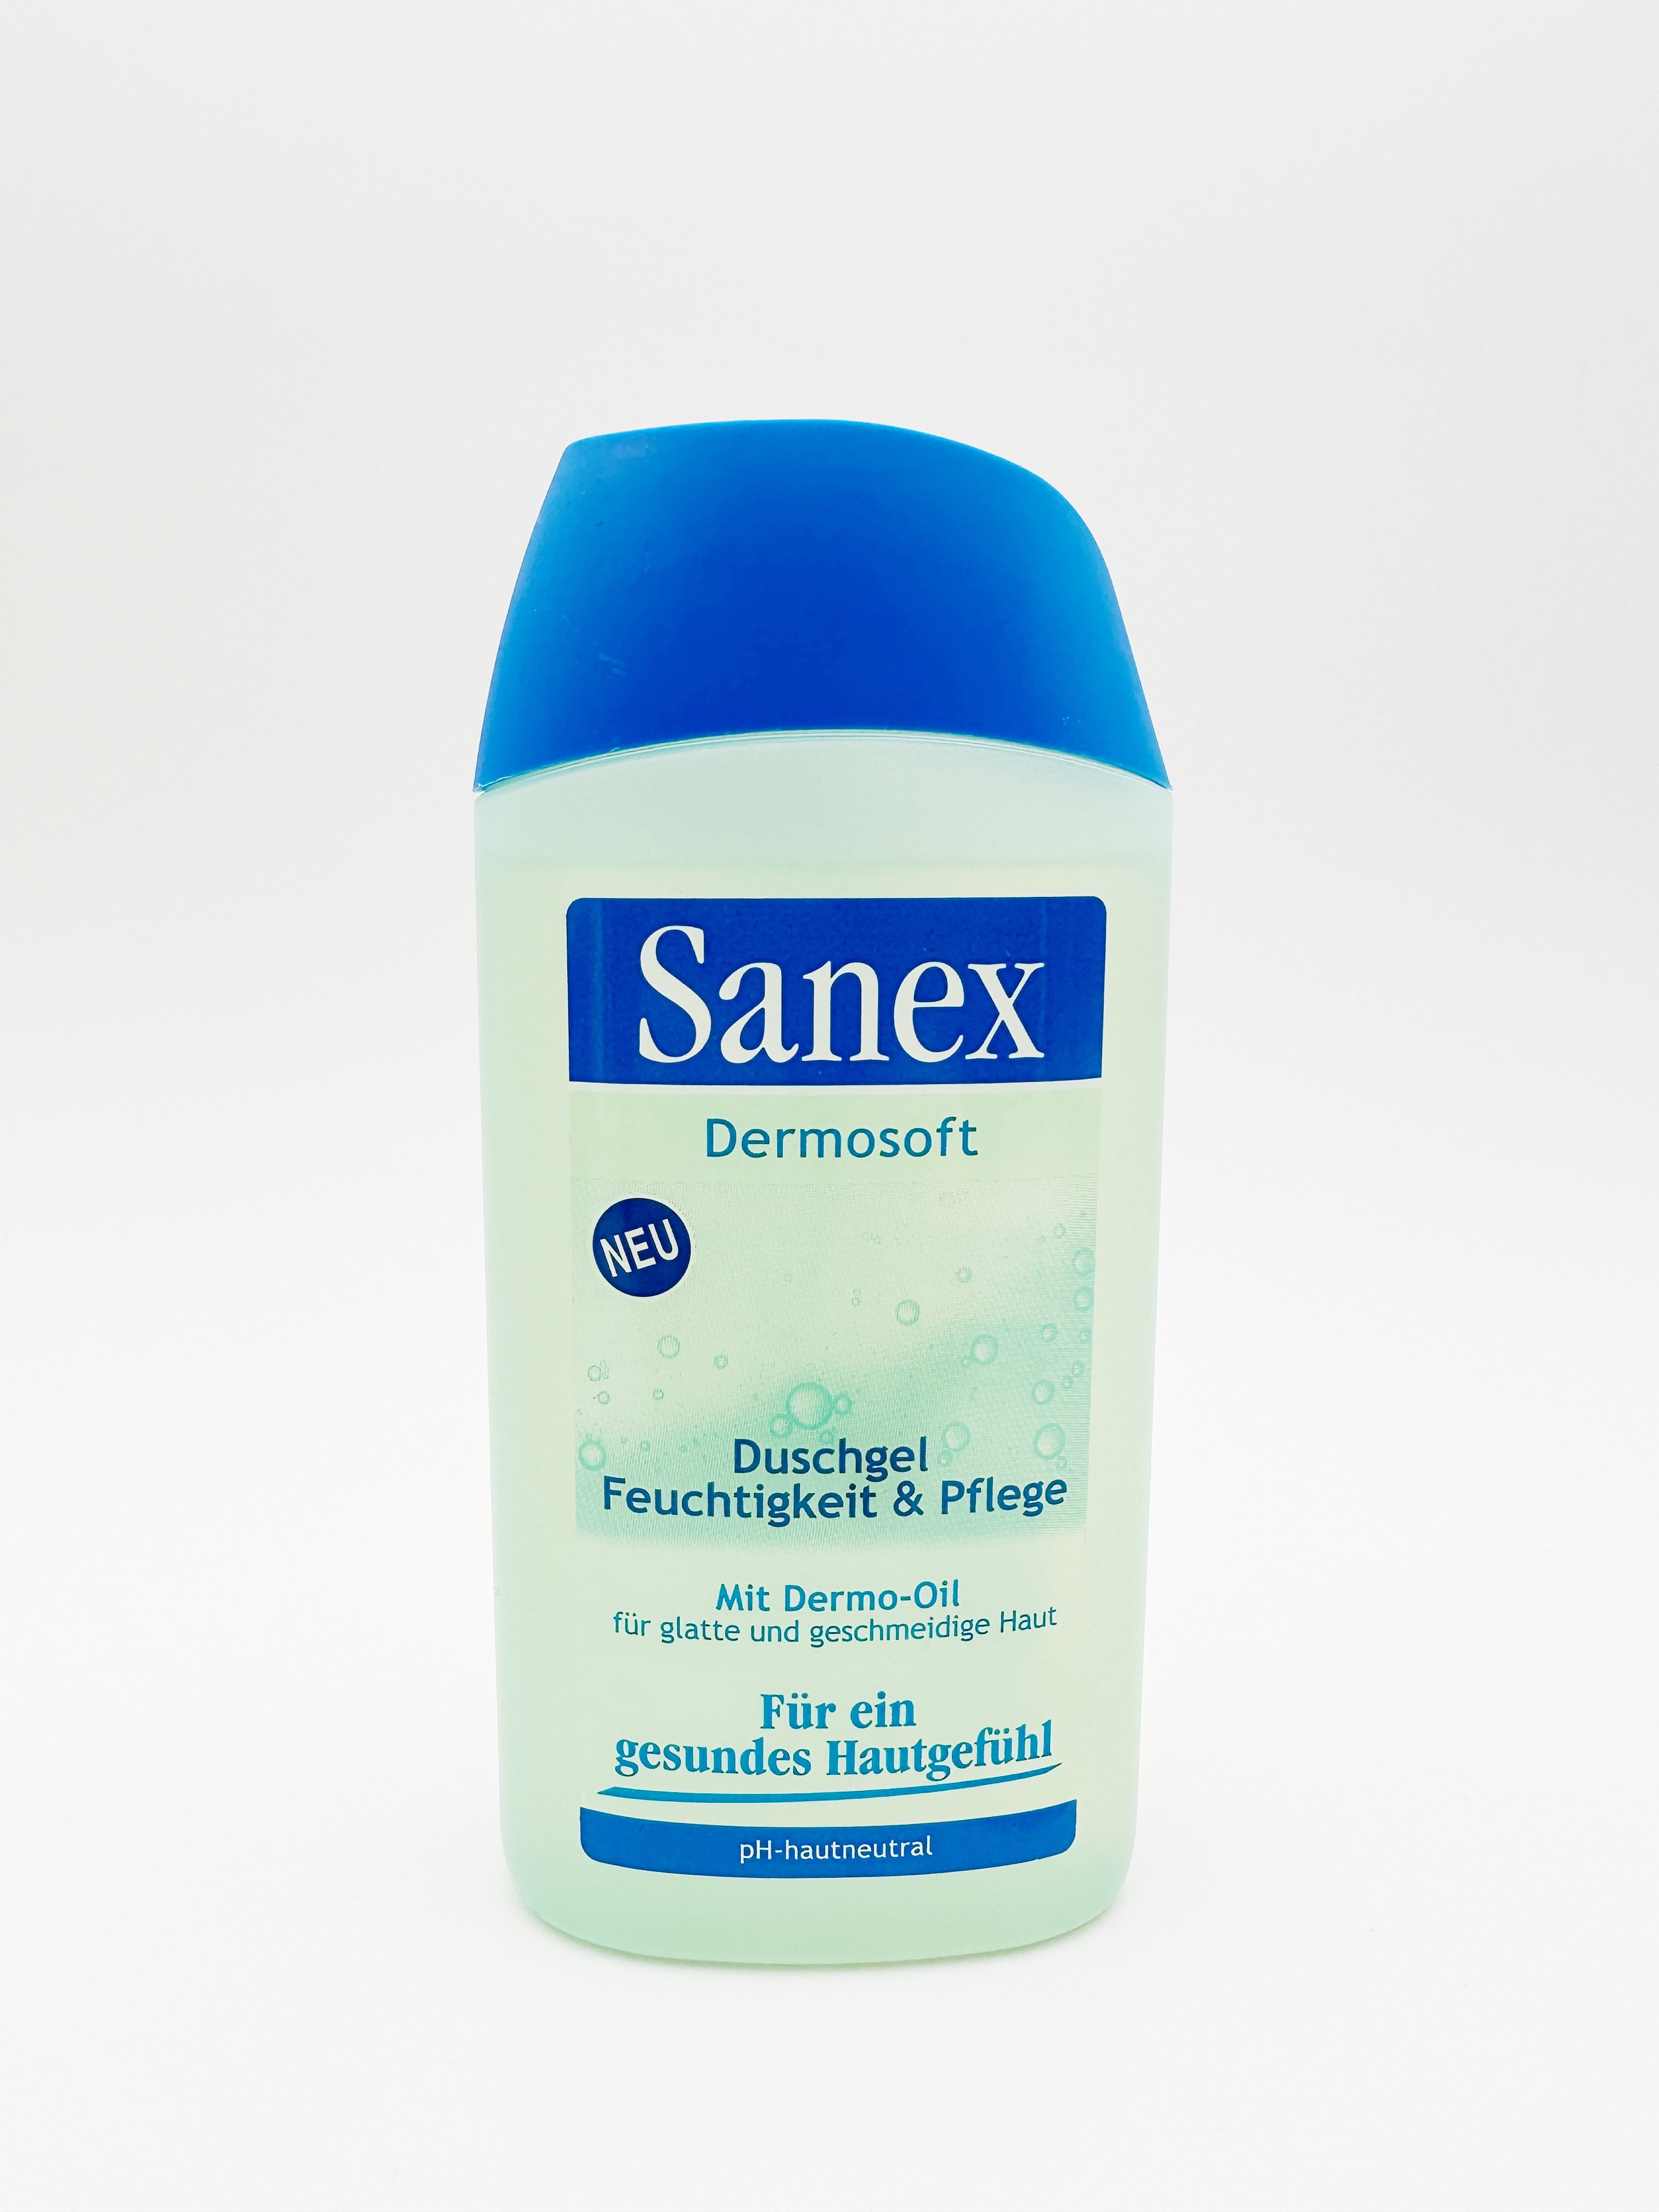 Sanex Duschgel mit Dermo-Oil 250ml